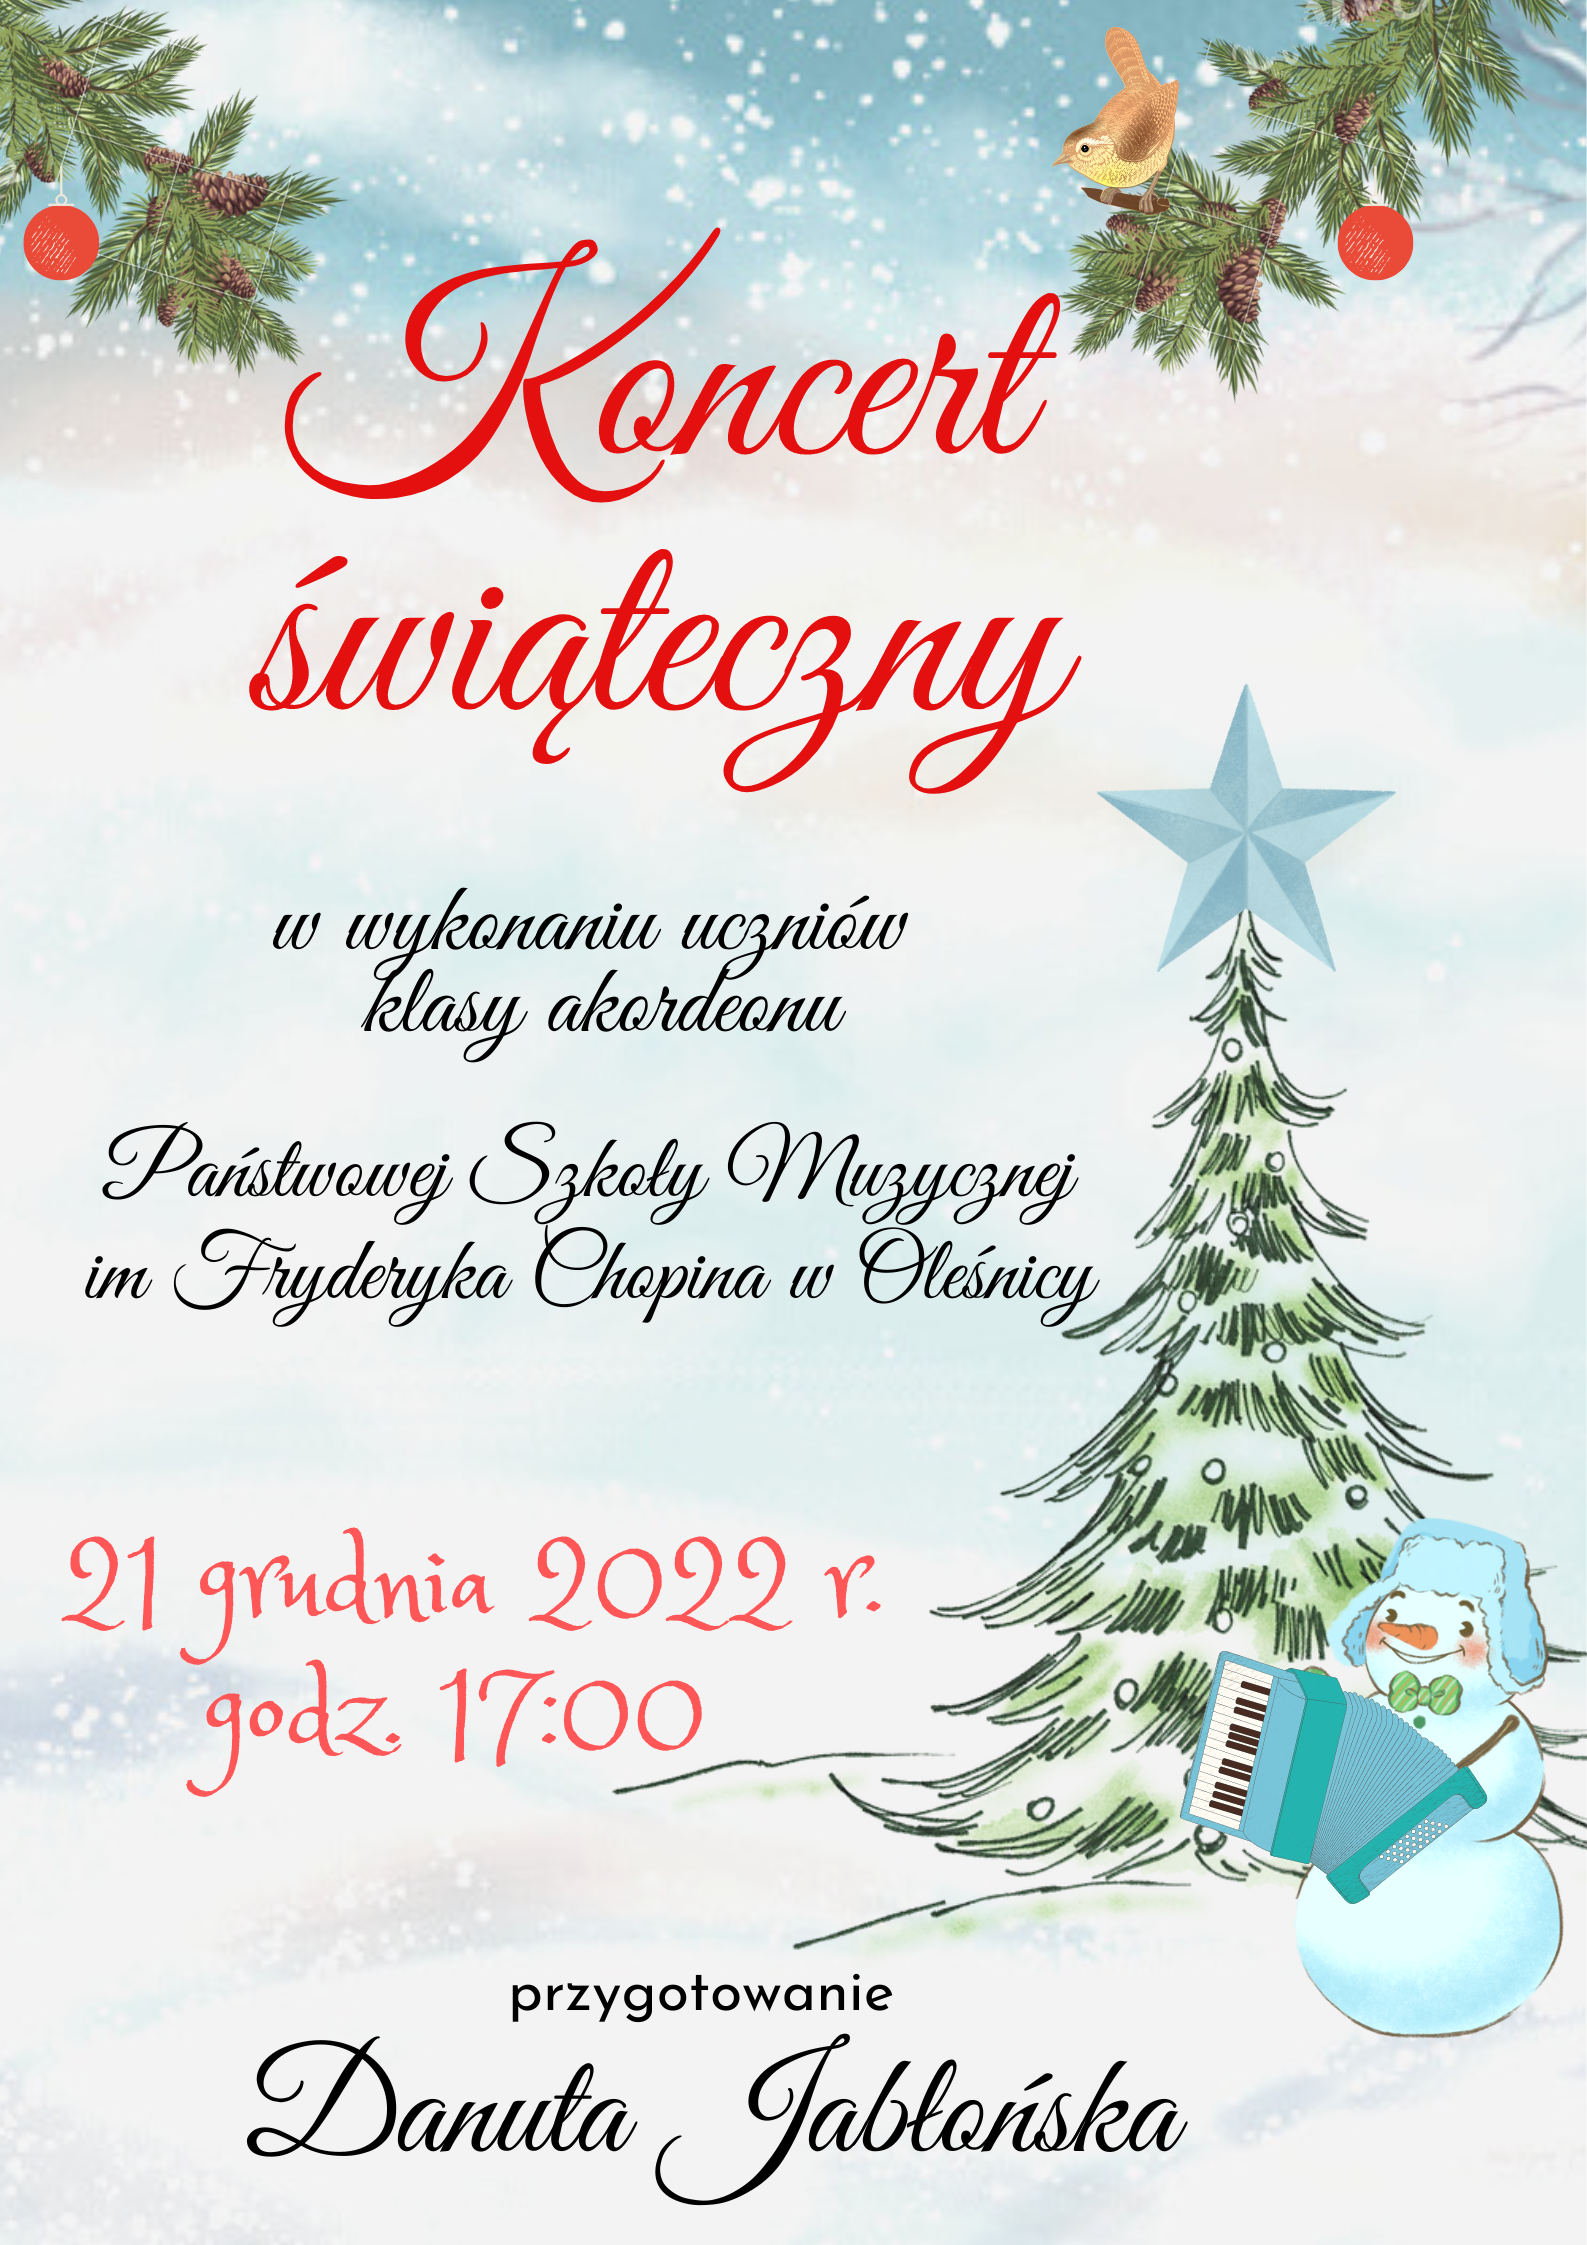 Plakat informujący o koncercie świątecznym uczniów klasy akordeonu p. Danuty Jabłońskiej w dniu 21 grudnia 2022 r. o godz.: 17:00. W tle grafiki w zimowym stylu, po prawej stronie choinka i bałwan grający na akordeonie